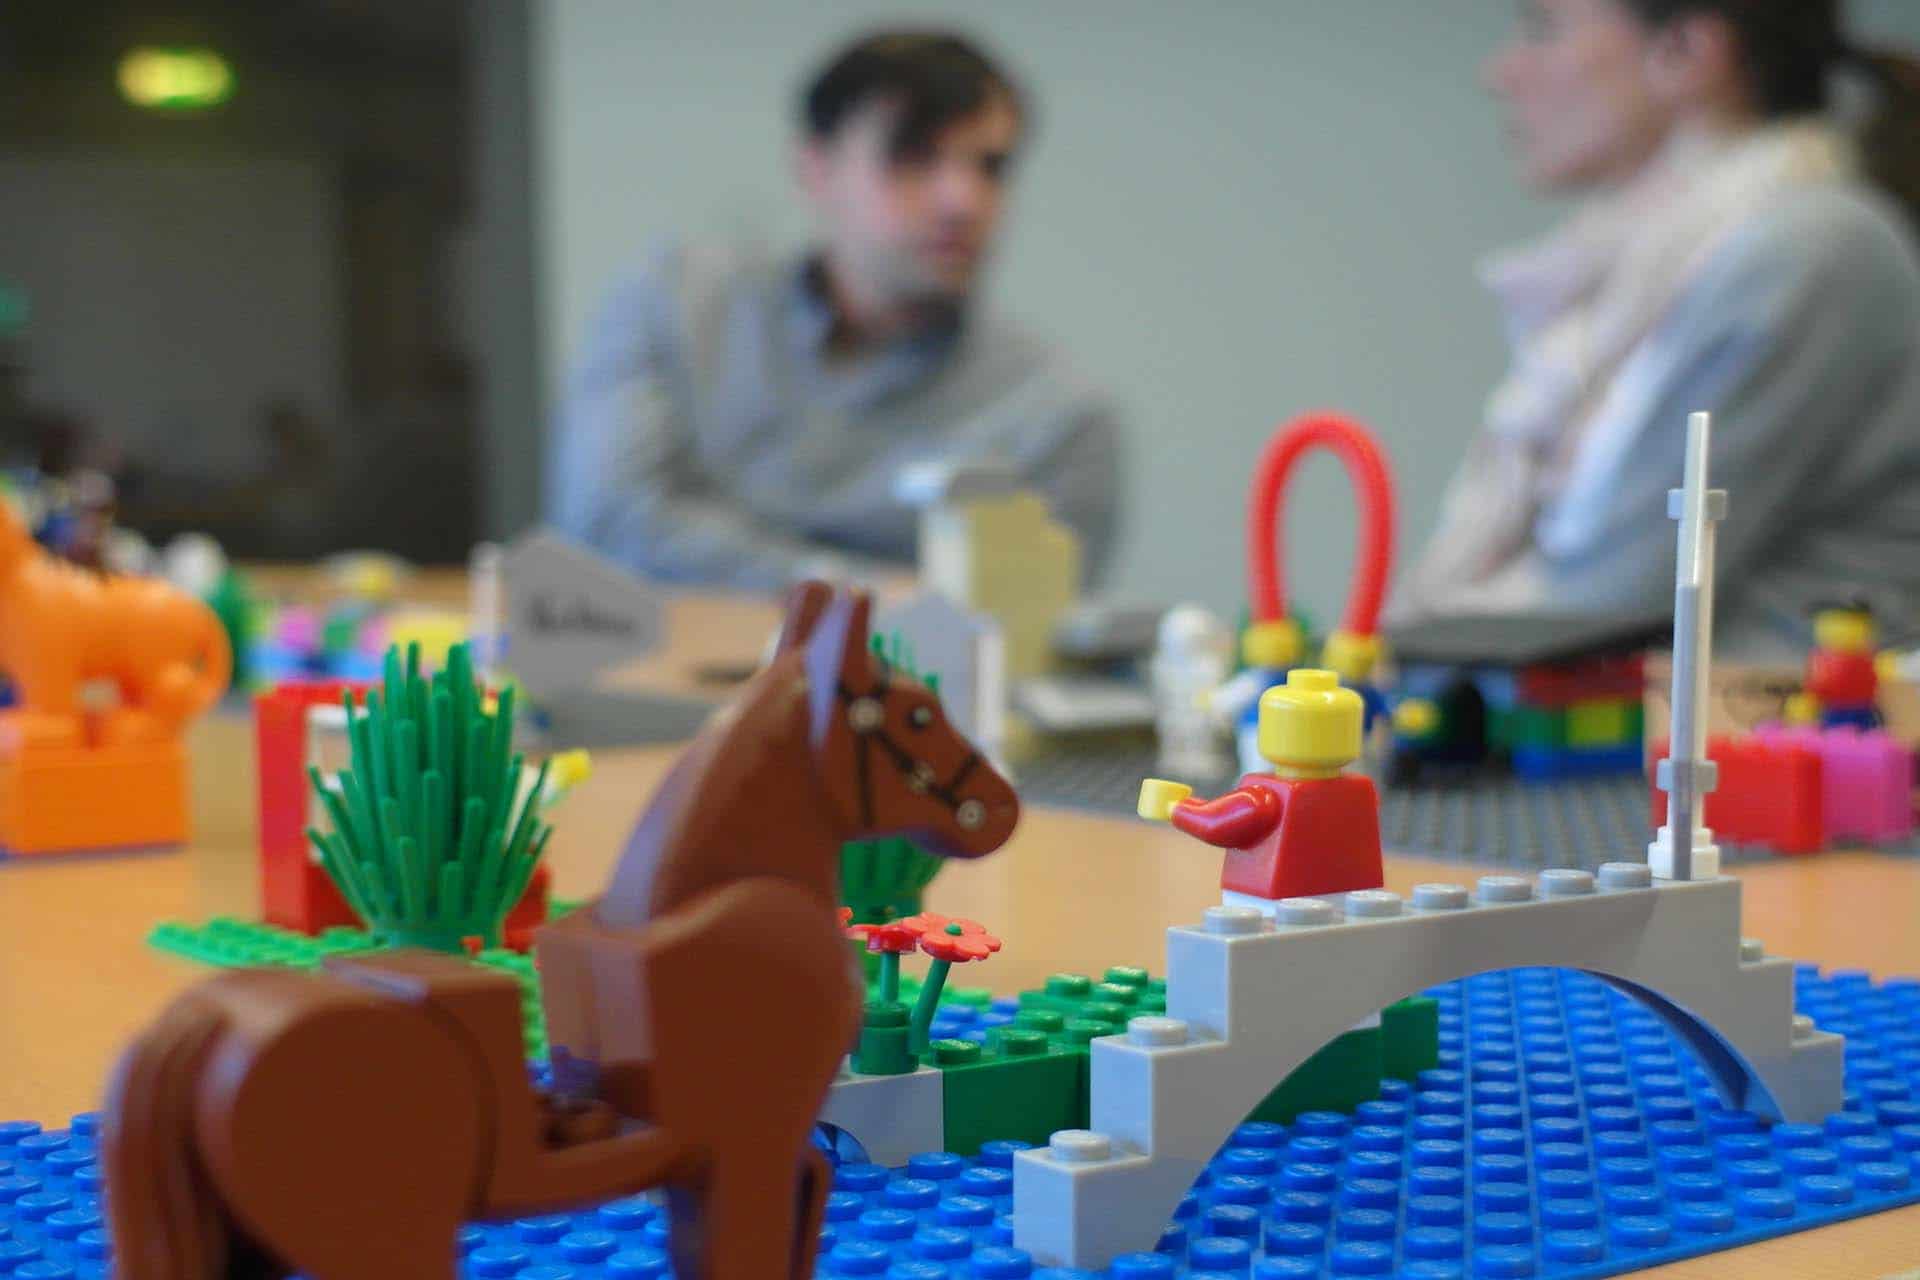 t2informatik Blog: Lego im Unternehmen